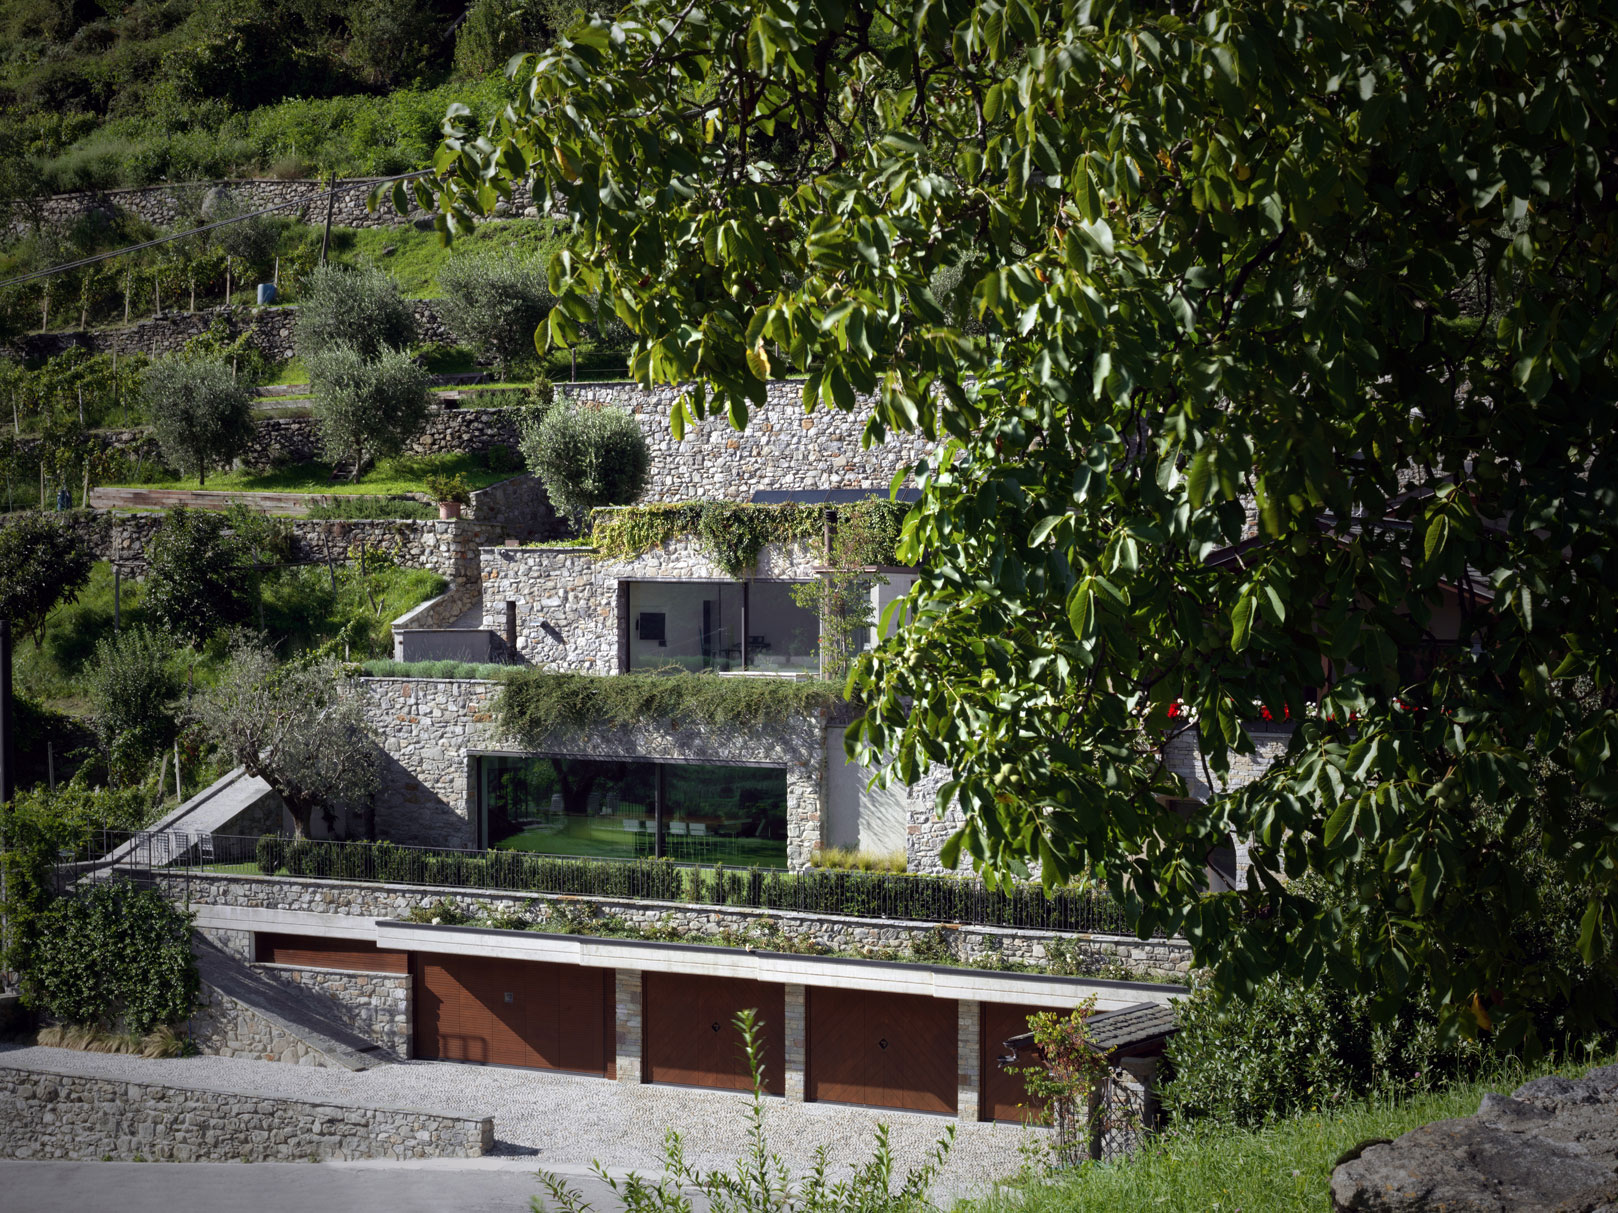 Soukromá rezidence, charakteristická přírodním kamenem, typickým pro danou oblast, je terasovitě zasazena v kopci plném zeleně a nabízí krásné výhledy do údolí severoitalské krajiny.